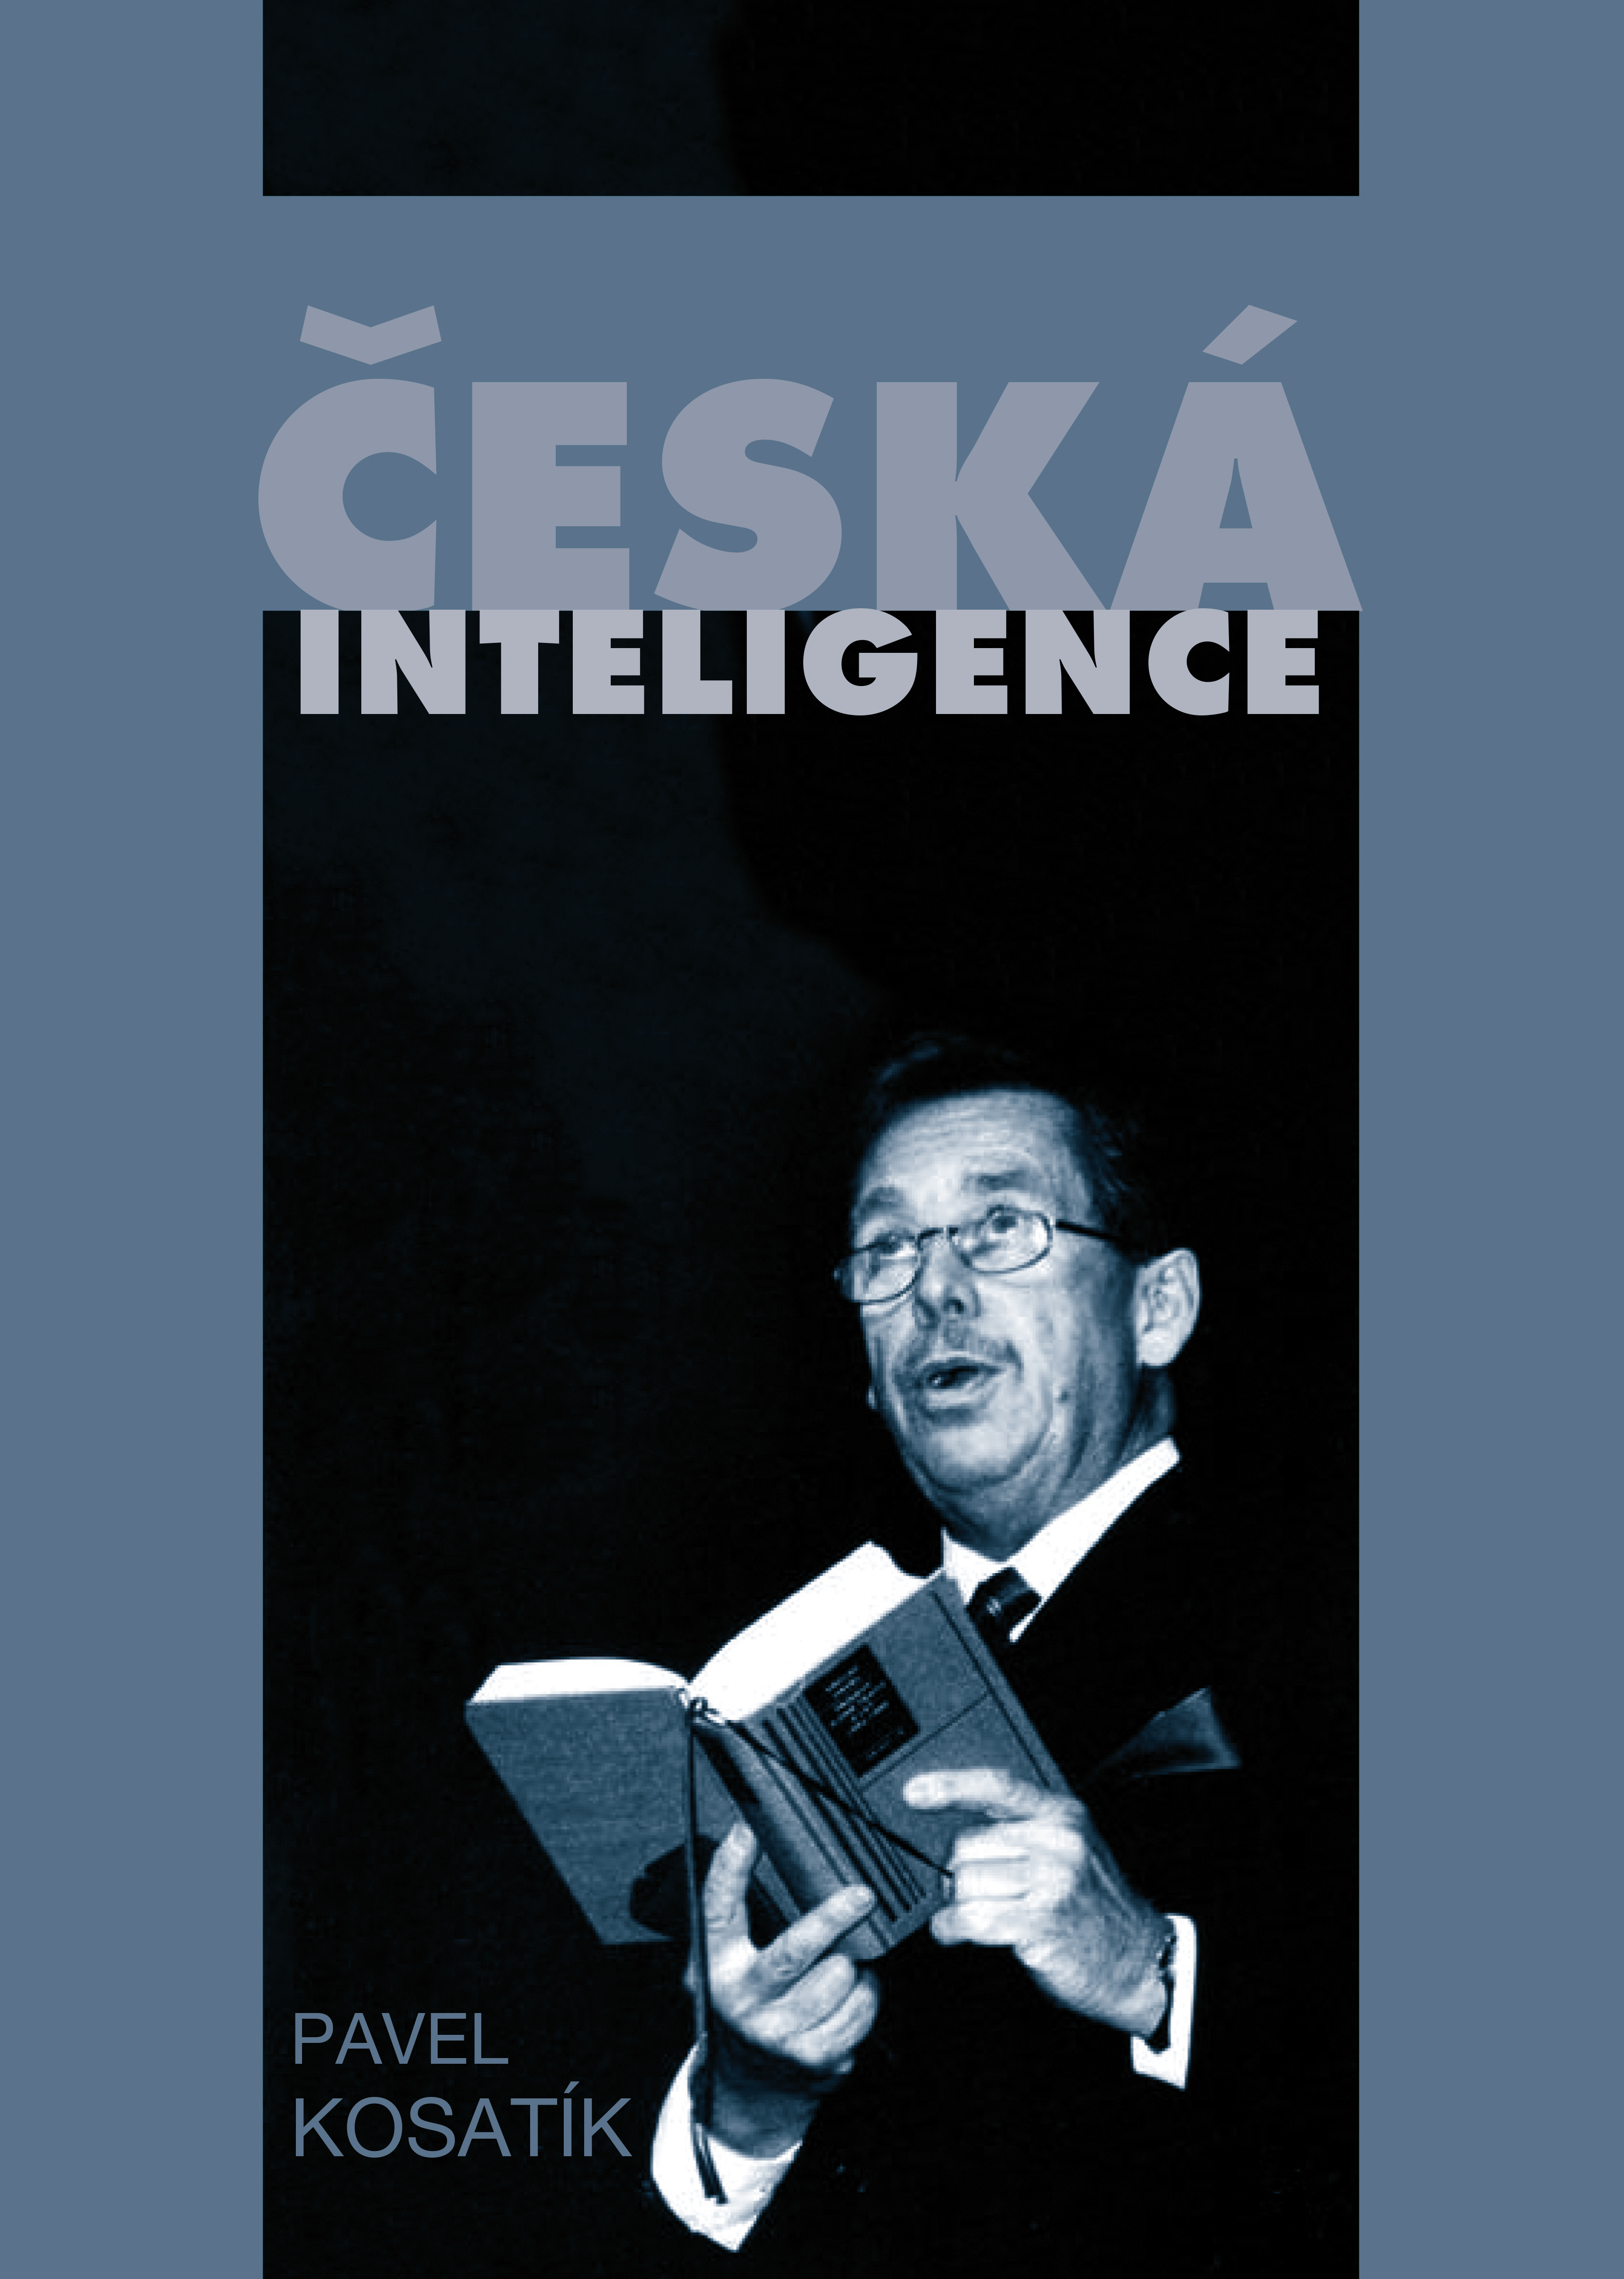 E-kniha Česká inteligence - Pavel Kosatík